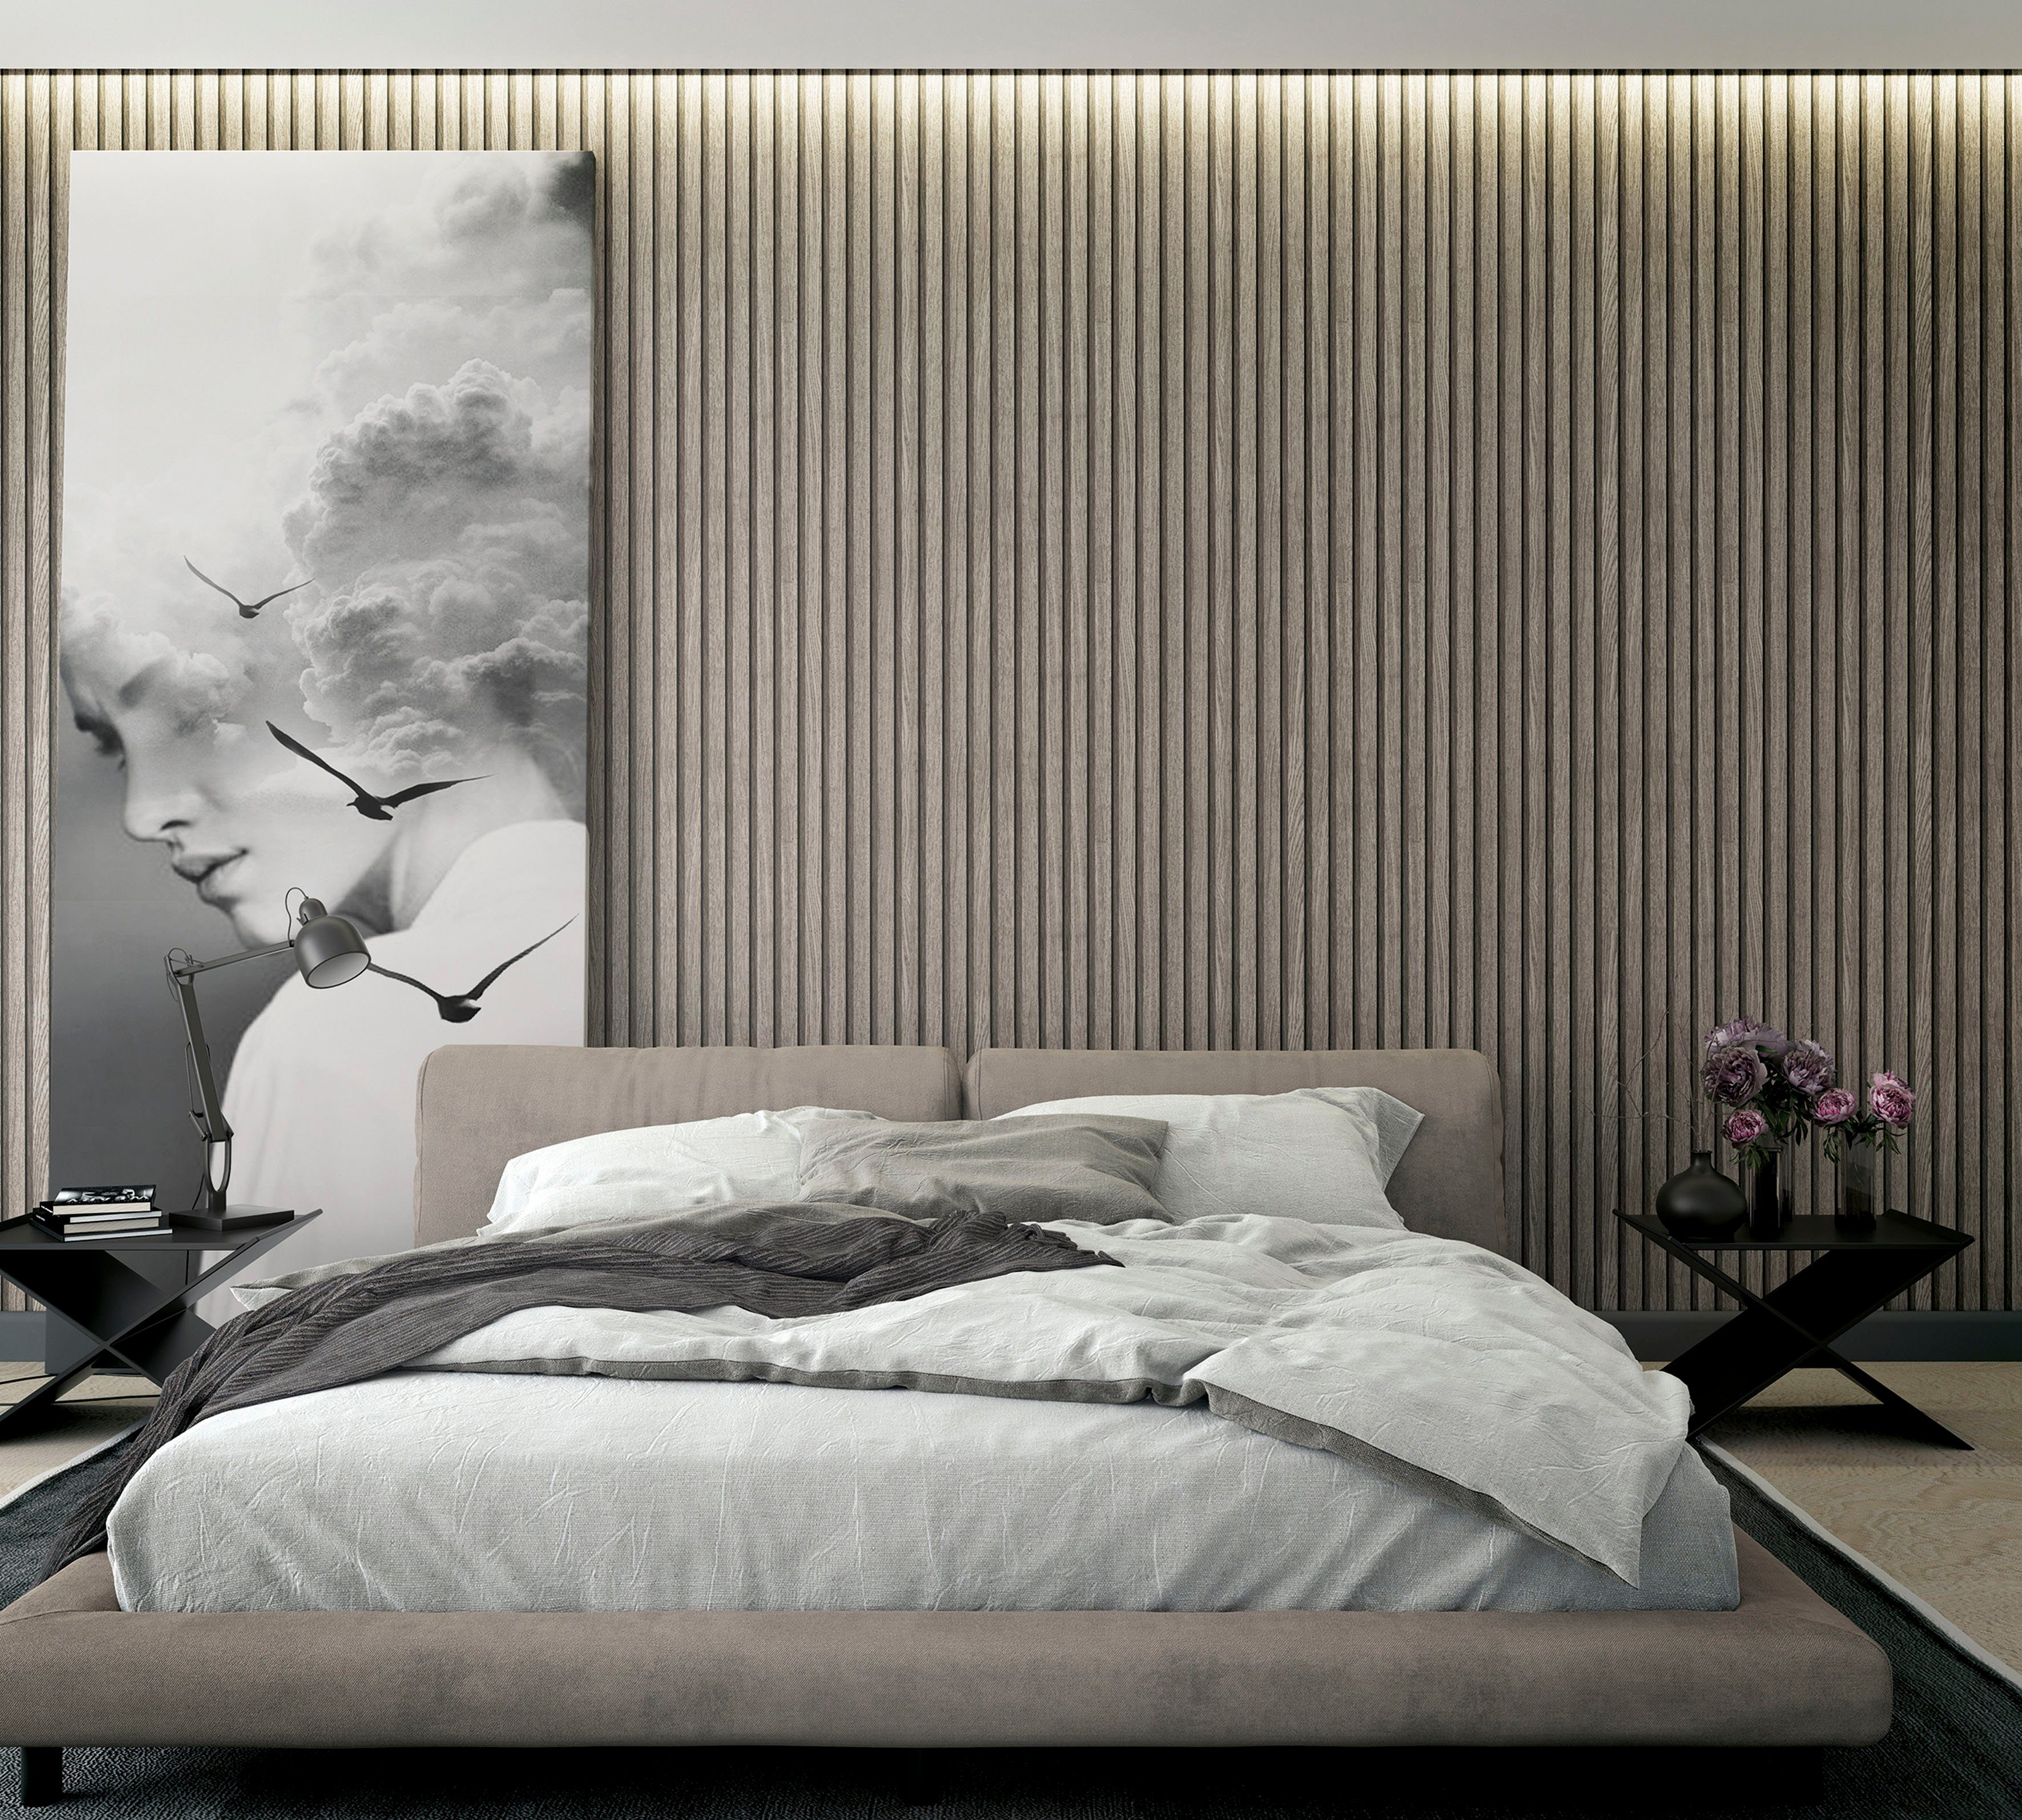 Vliestapete grau Marburg moderne für Schlafzimmer Timber, geprägt, matt, Vliestapete Wohnzimmer Küche 3D